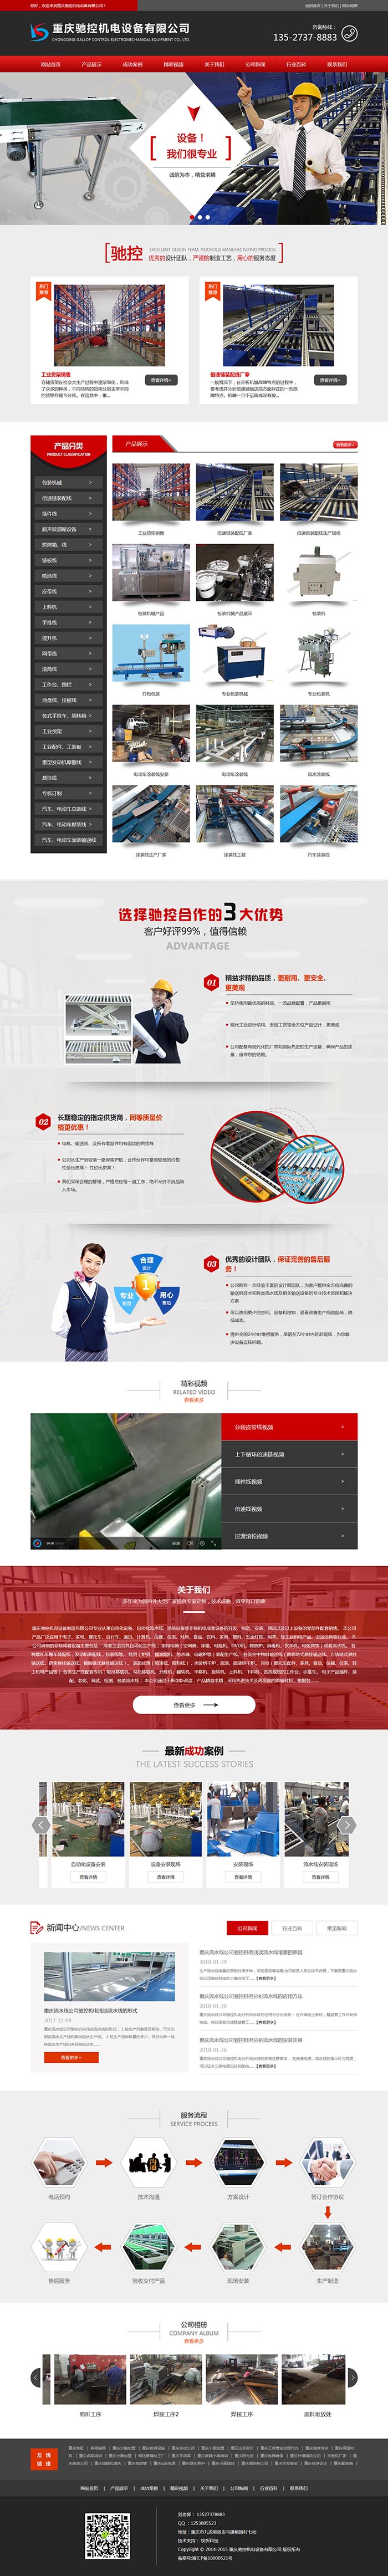 重庆驰控机电设备有限公司网站建设案例